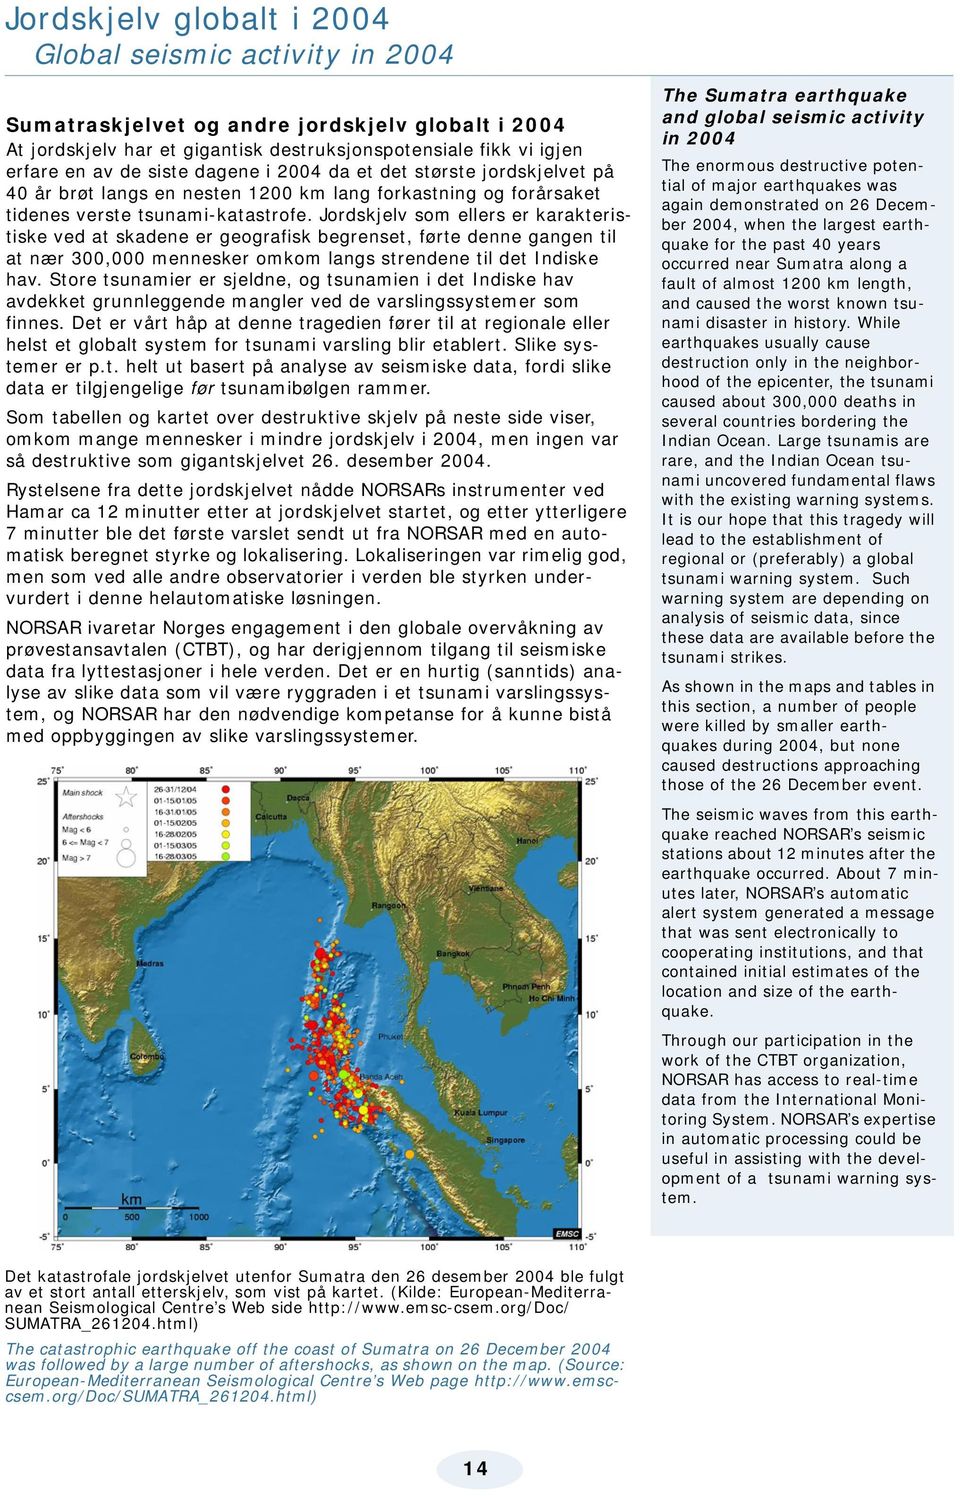 Jordskjelv som ellers er karakteristiske ved at skadene er geografisk begrenset, førte denne gangen til at nær 300,000 mennesker omkom langs strendene til det Indiske hav.